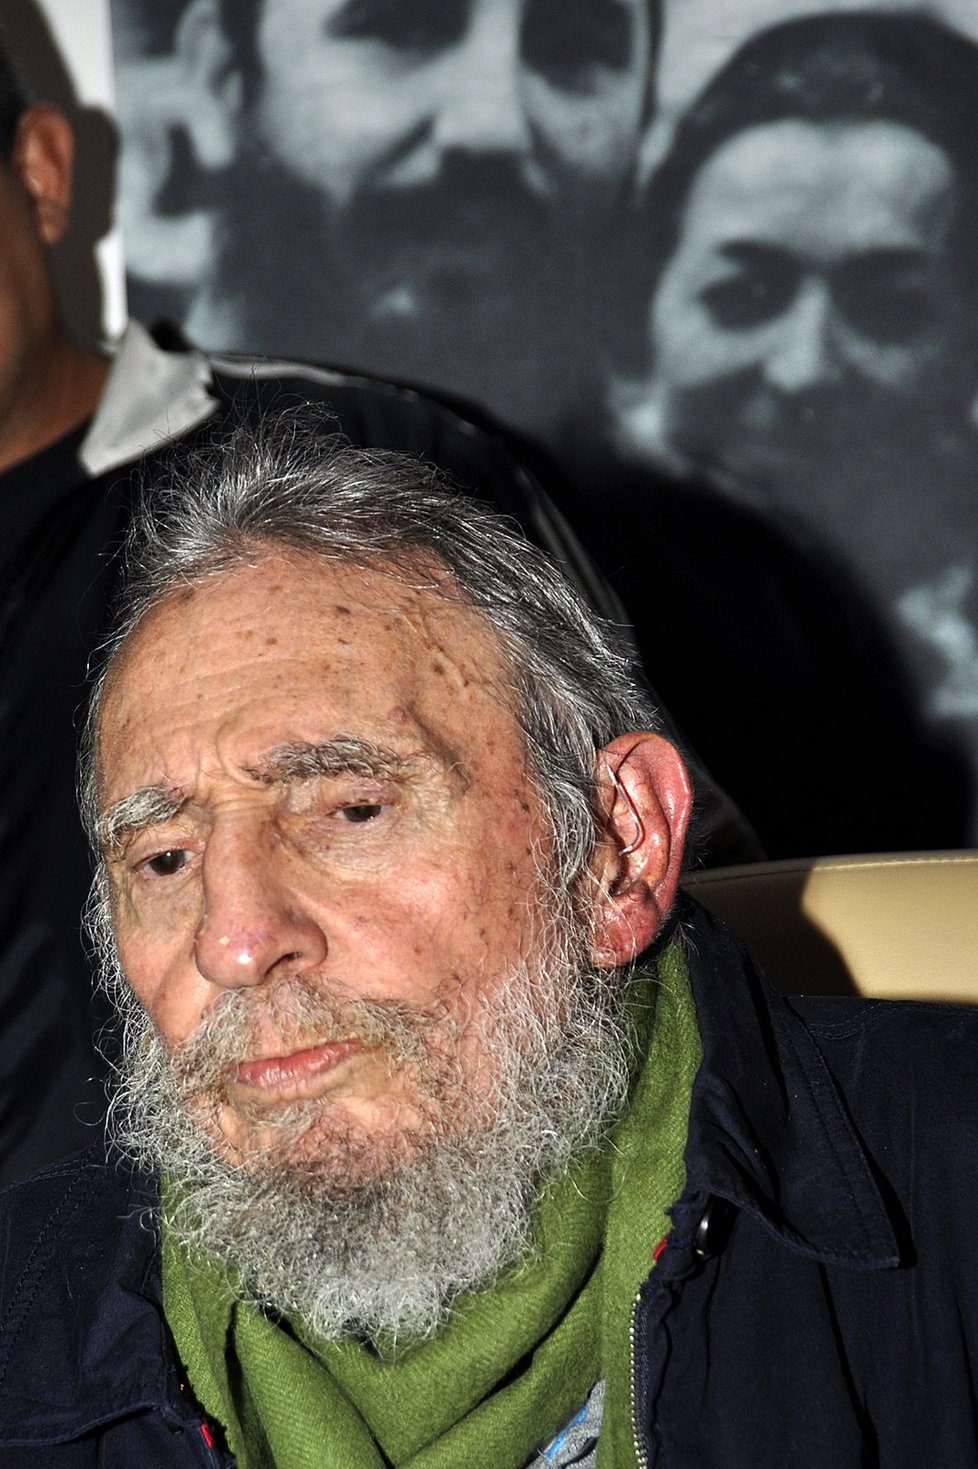 Castro několikrát vyvrátil dohady veřejnosti o tom, že již zemřel.